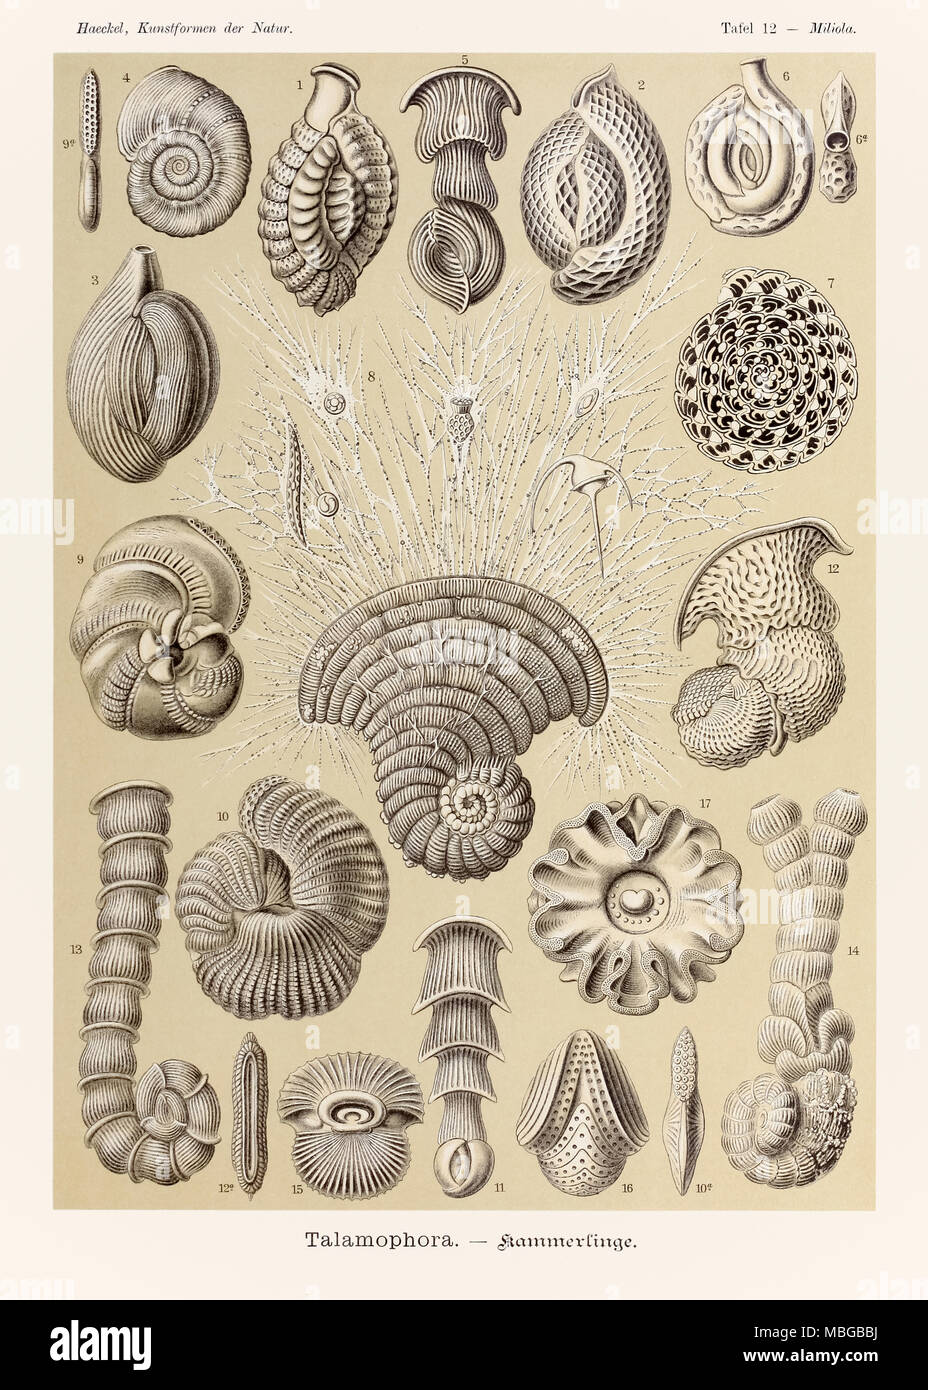 Platte 12 Miliola Talamophora von 'Kunstformen der Natur' (Kunstformen in der Natur), illustriert von Ernst Haeckel (1834-1919). Weitere Informationen finden Sie unten. Stockfoto